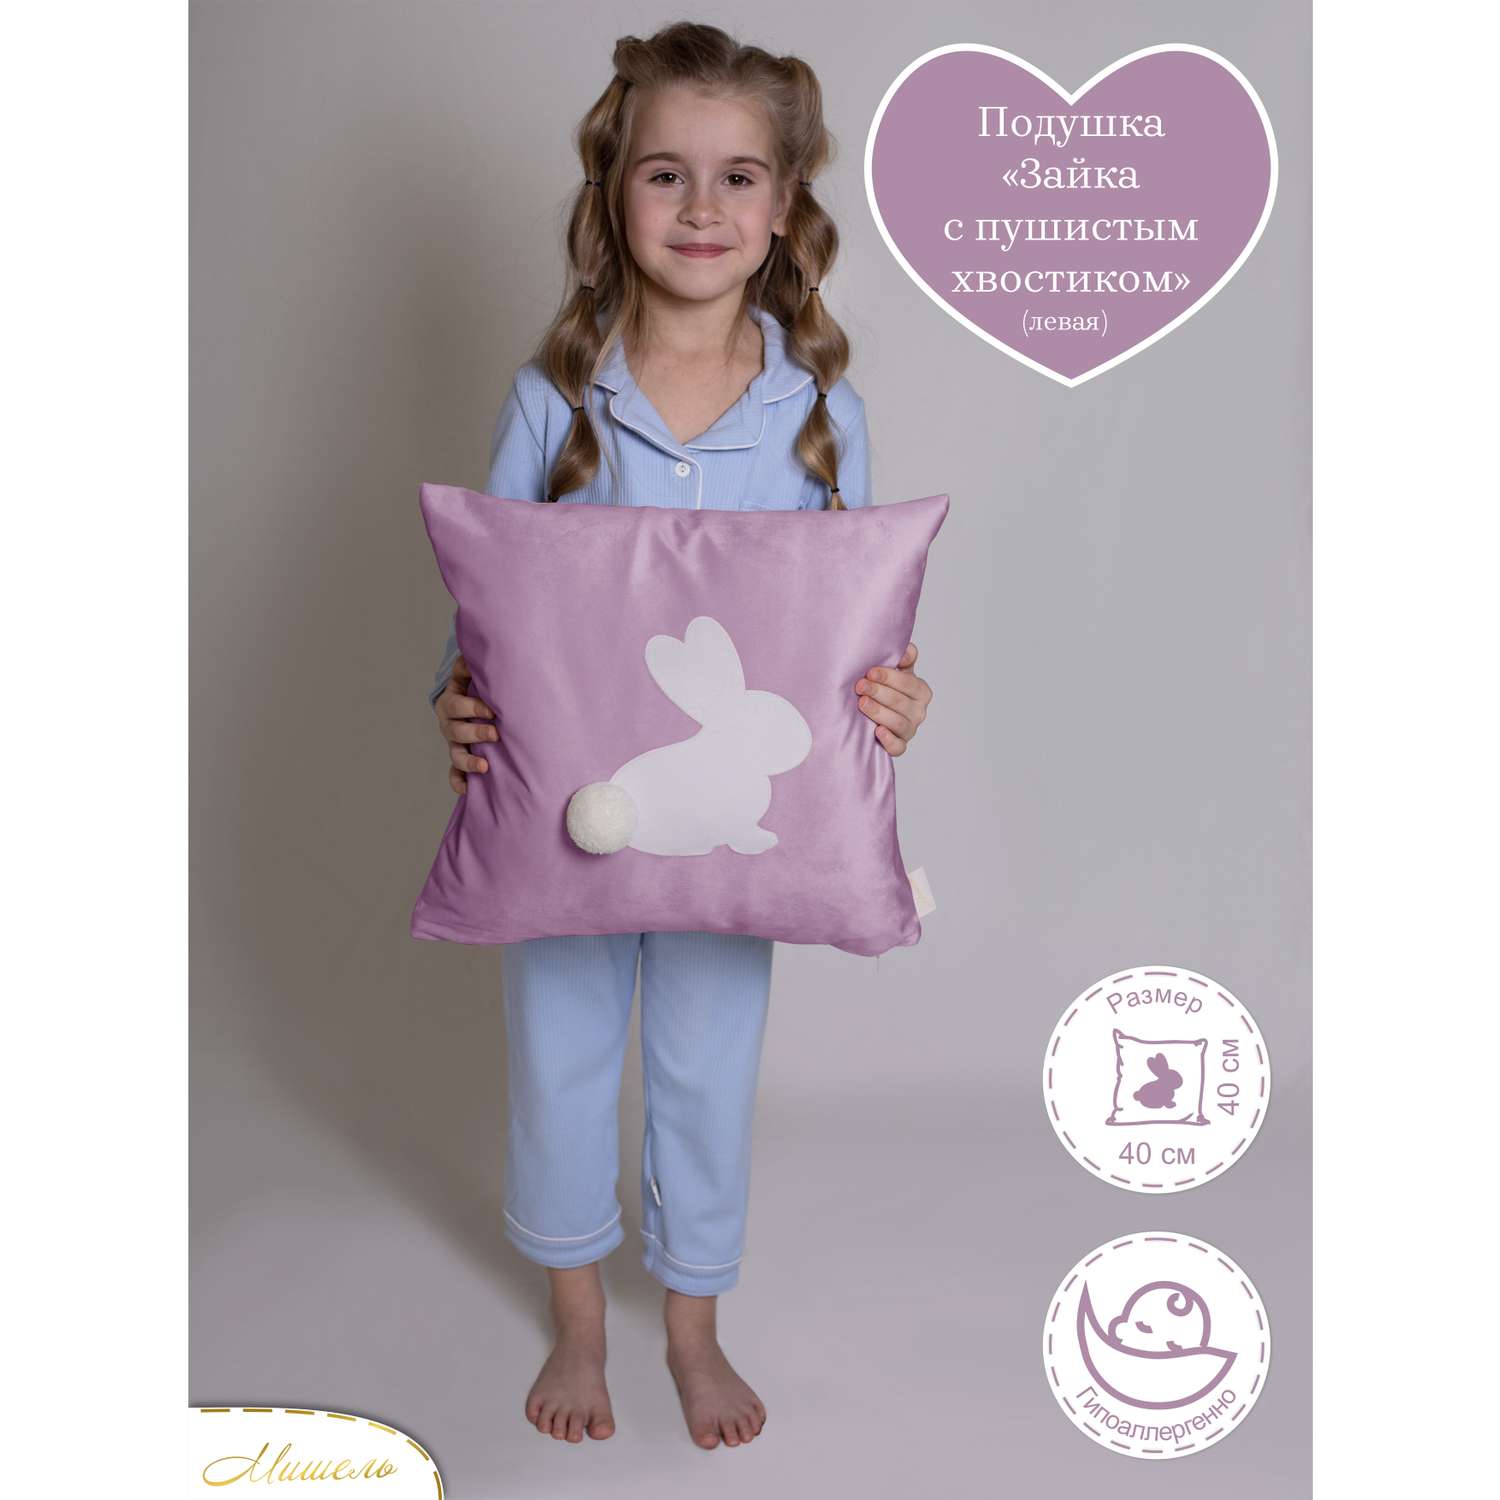 Подушка декоративная детская Мишель Зайка с пушистым хвостом цвет сиреневый левая - фото 1